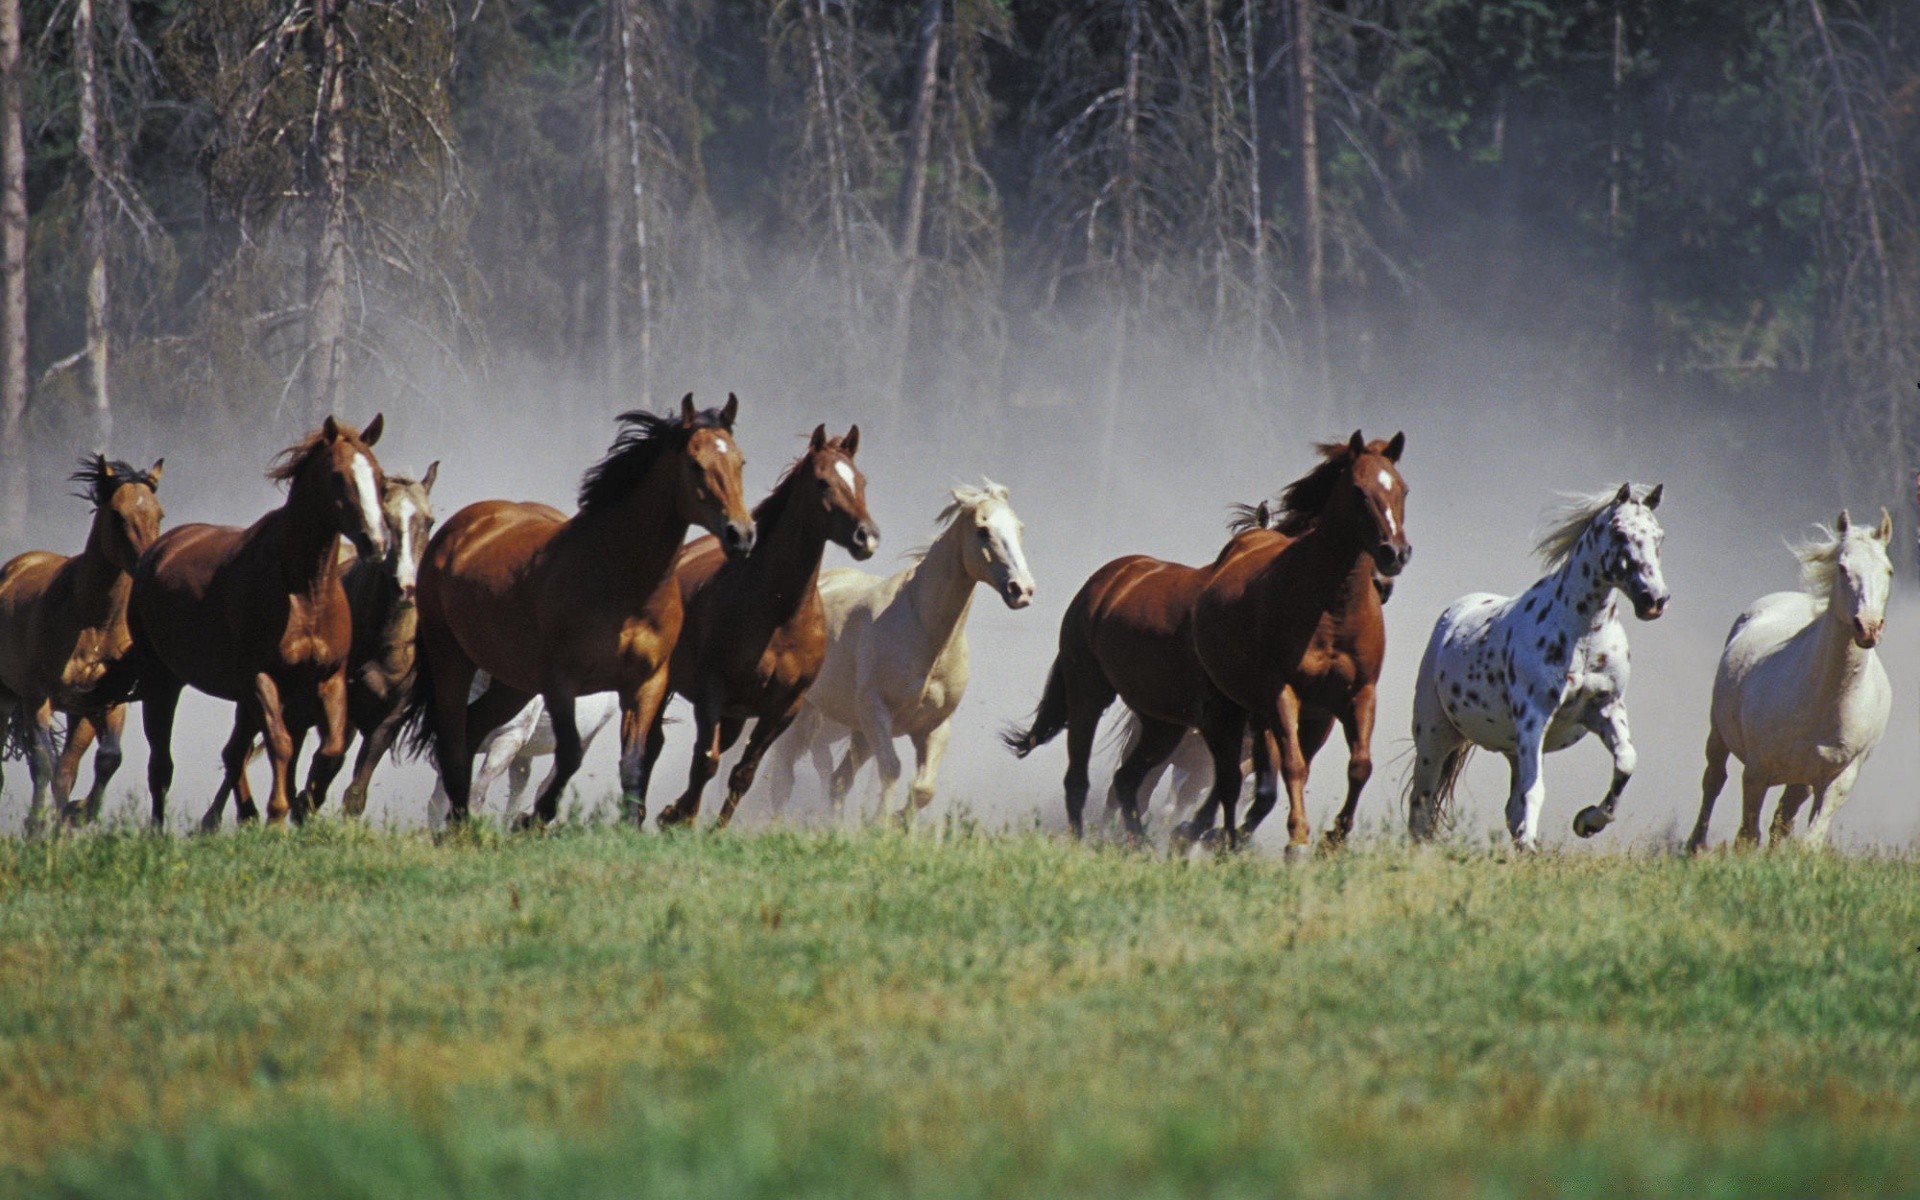 лошади конница млекопитающее конный лошадь сенокос ферма маре коневодство стадо жеребец сидит трава пастбище живыми животными сельское хозяйство породистые животное поле скоко бегун